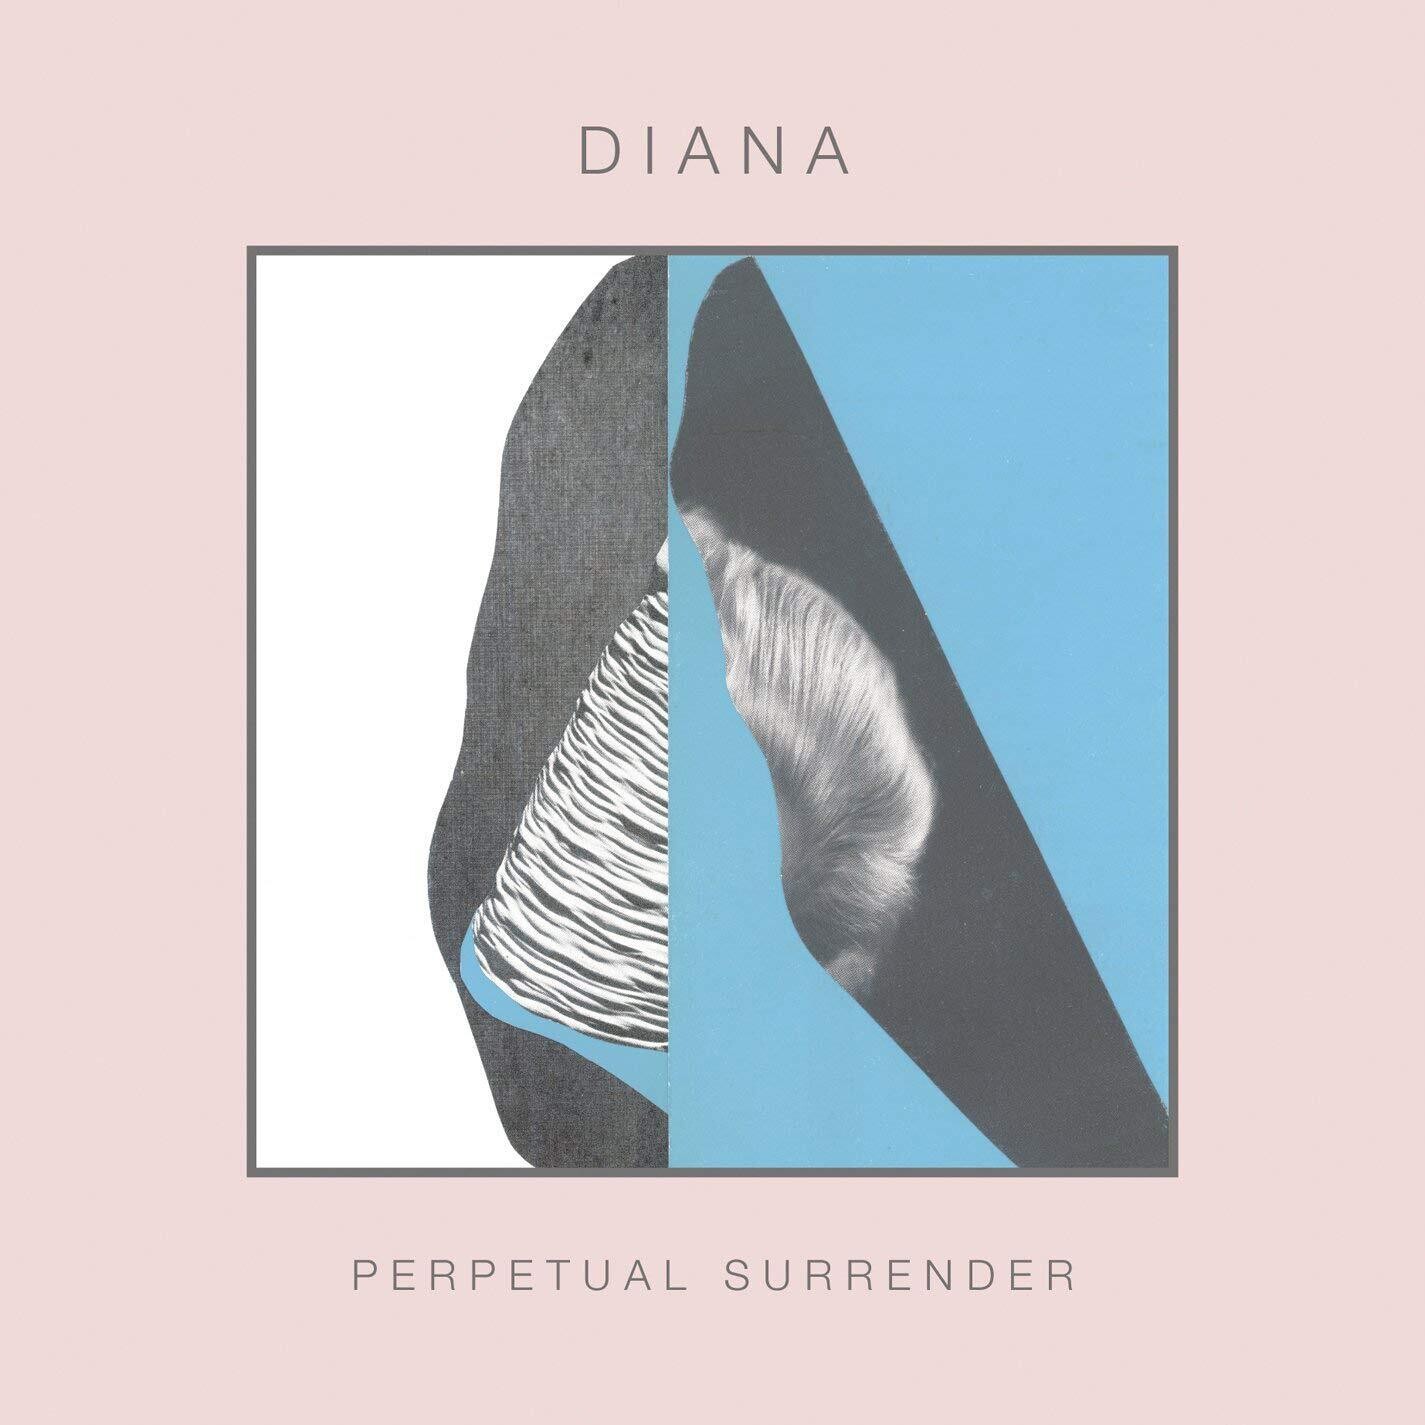 Diana "Perpetual Surrender" NM 2013